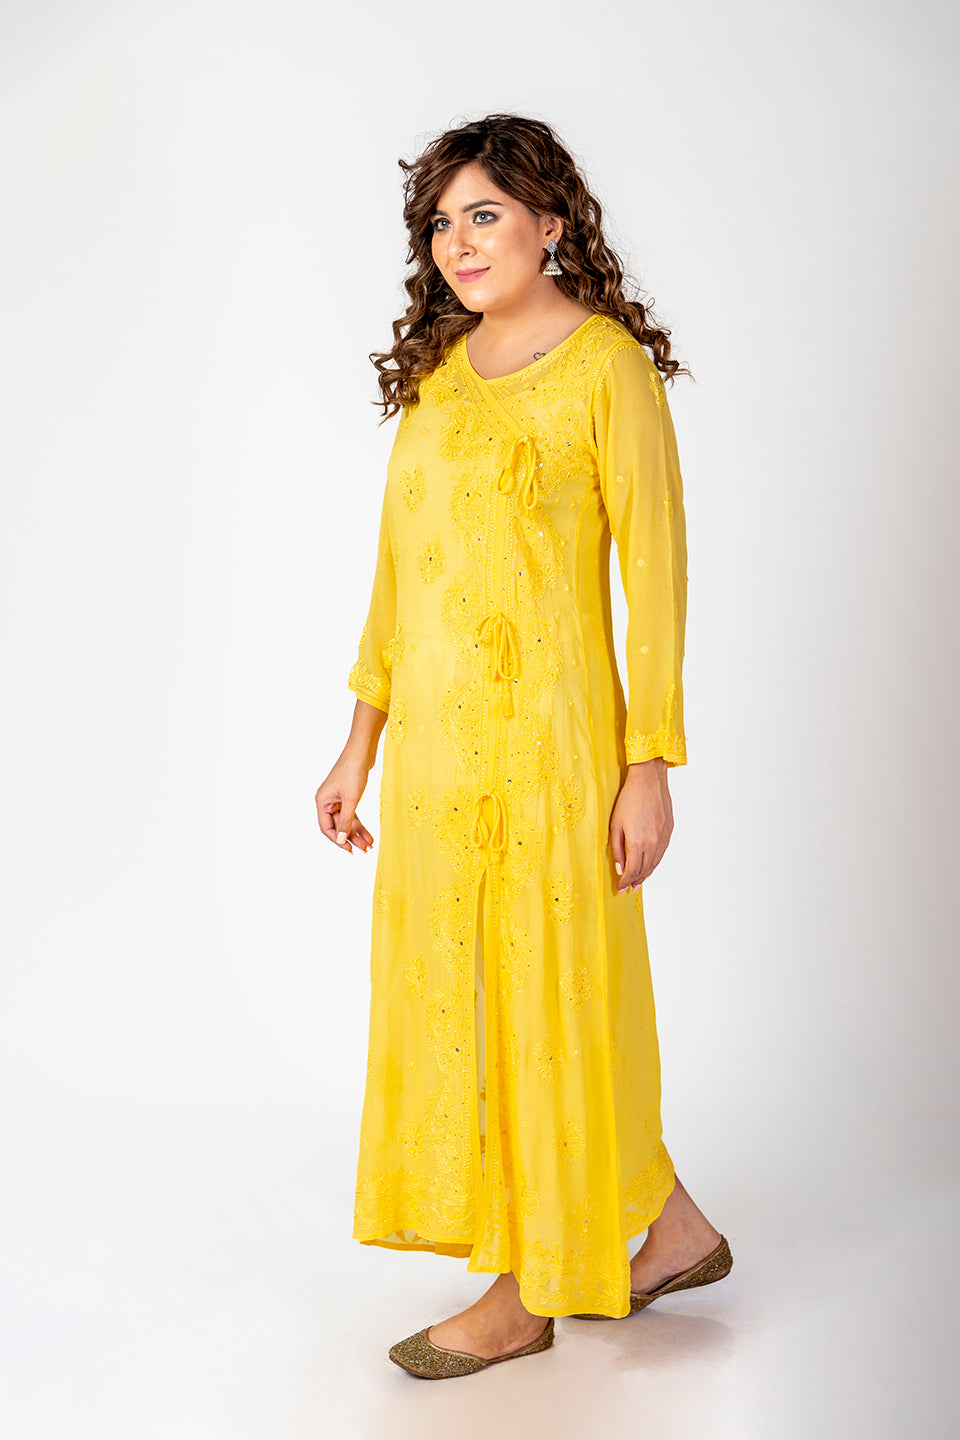 Nice Hand Embroided Skin Freindly Viscose Chikankari Yellow Gown kurti With Mukaish Lucknow Chikan Emporium.